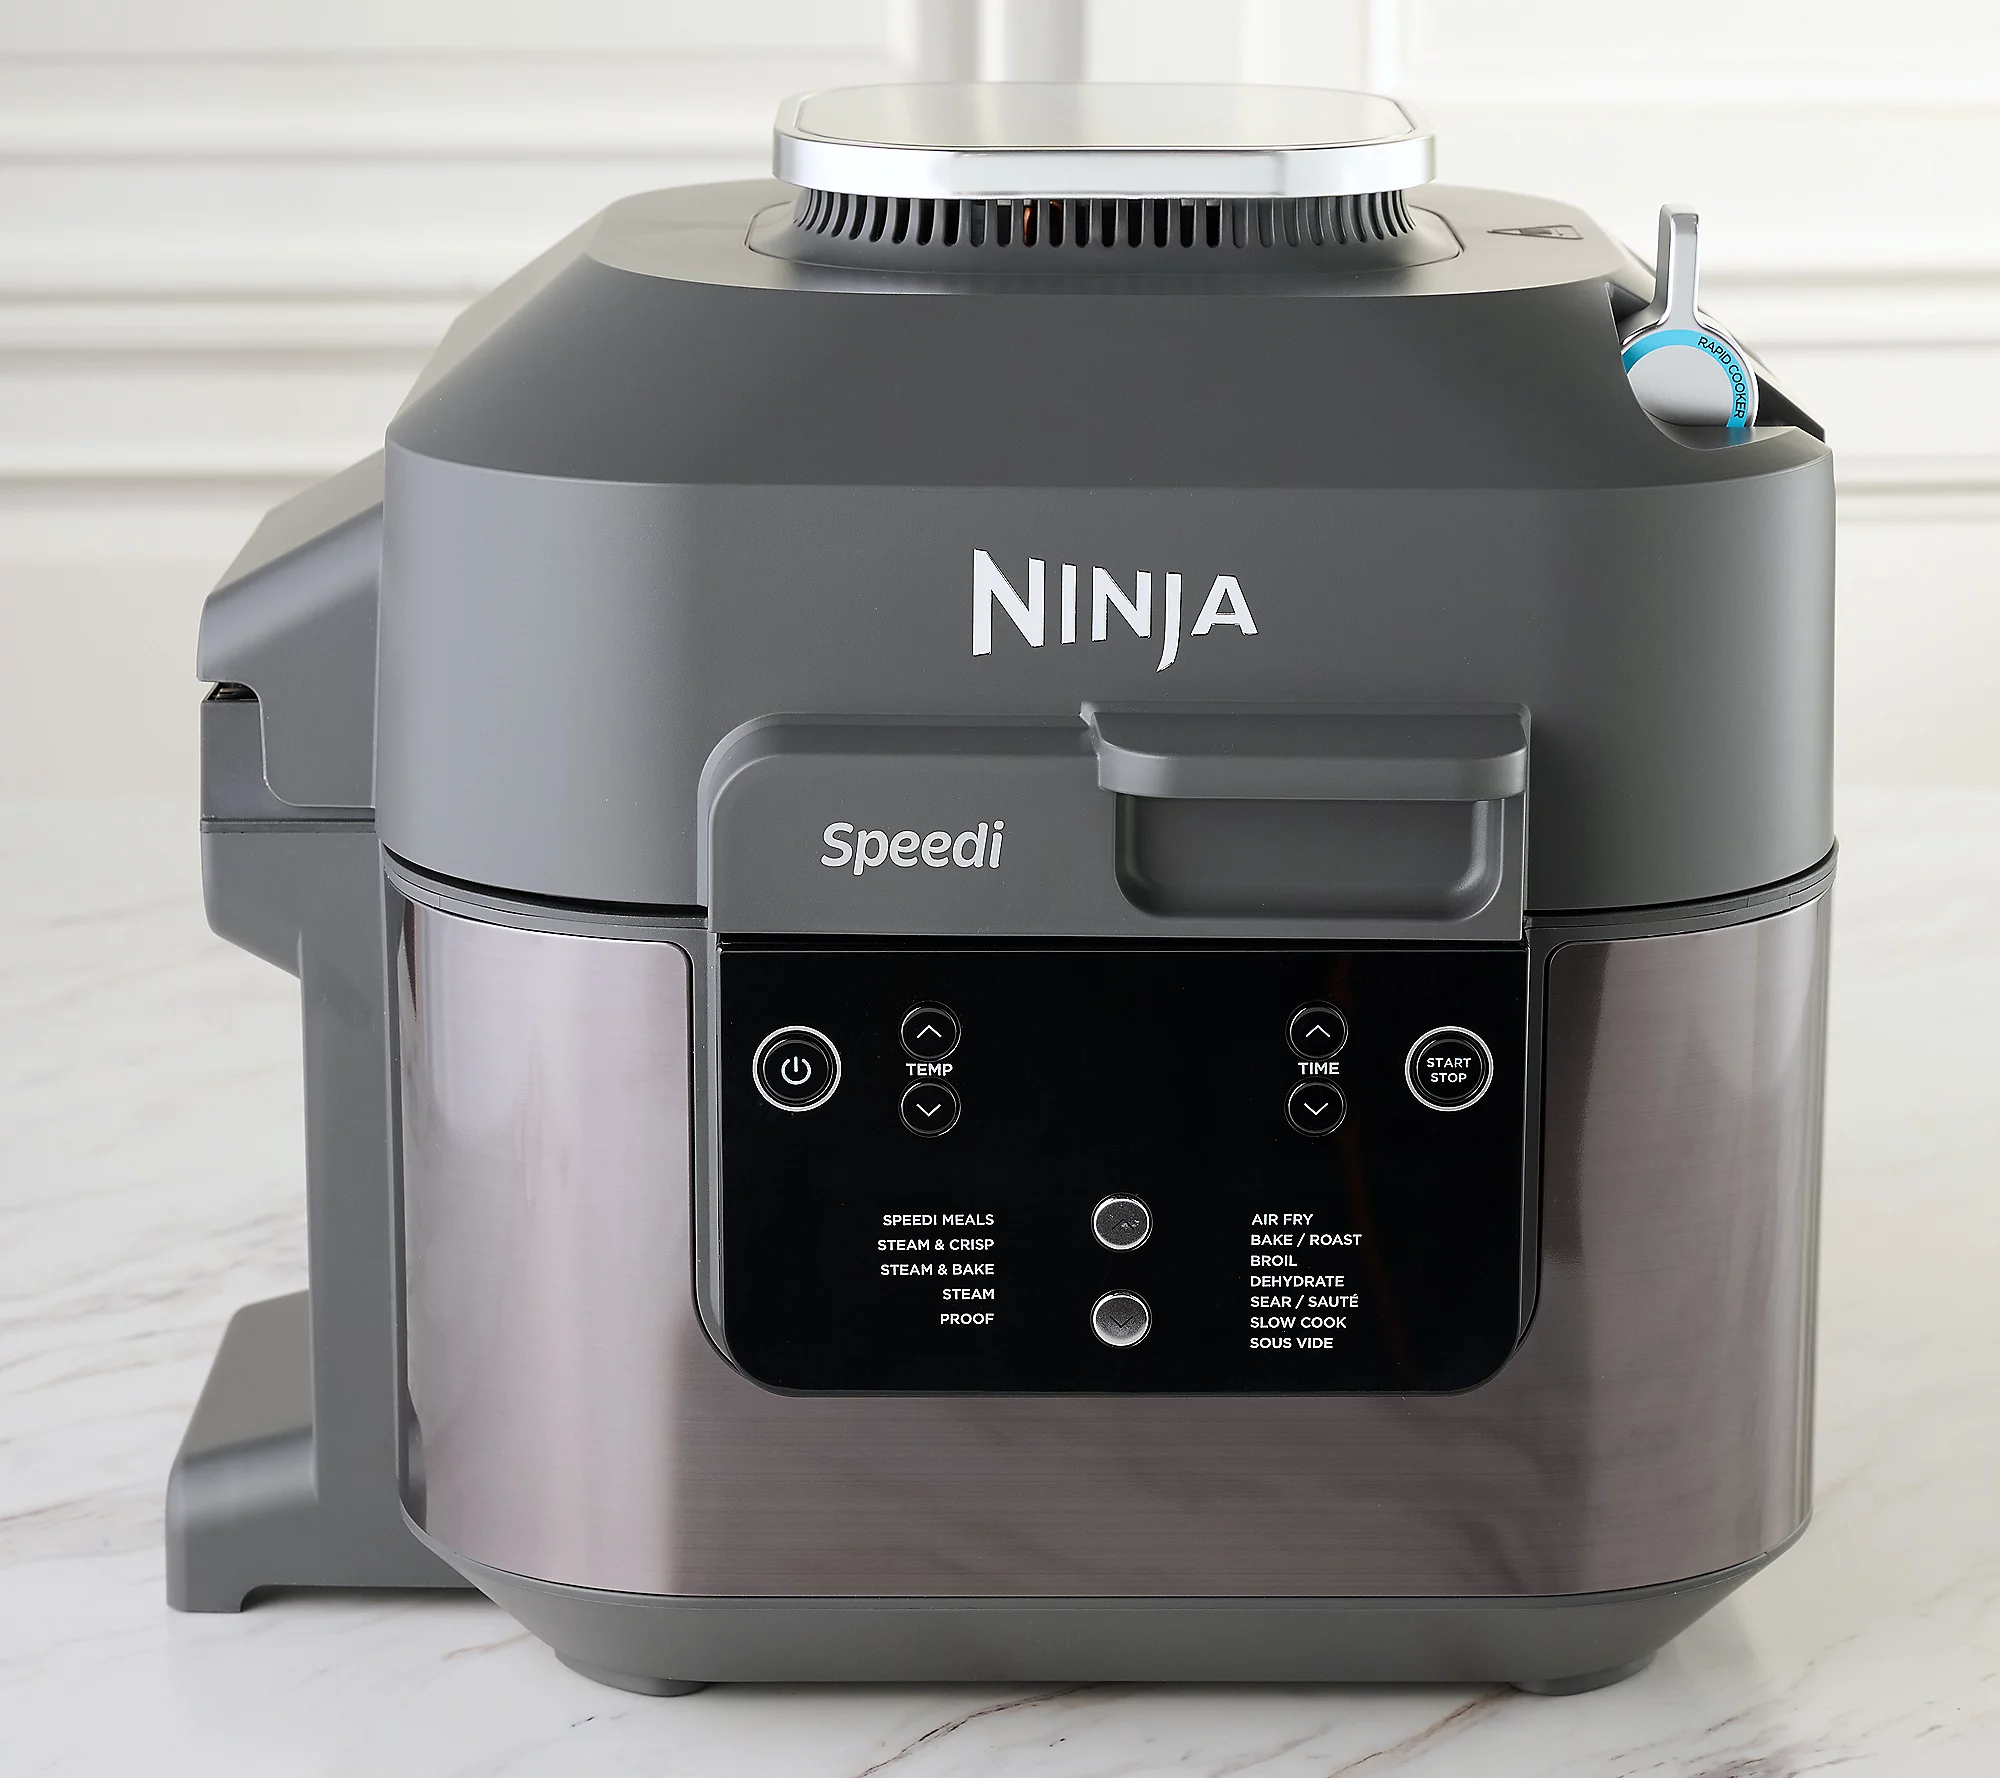 New QVC Customers: 6-Qt Ninja Speedi Rapid Cooker & Air Fryer